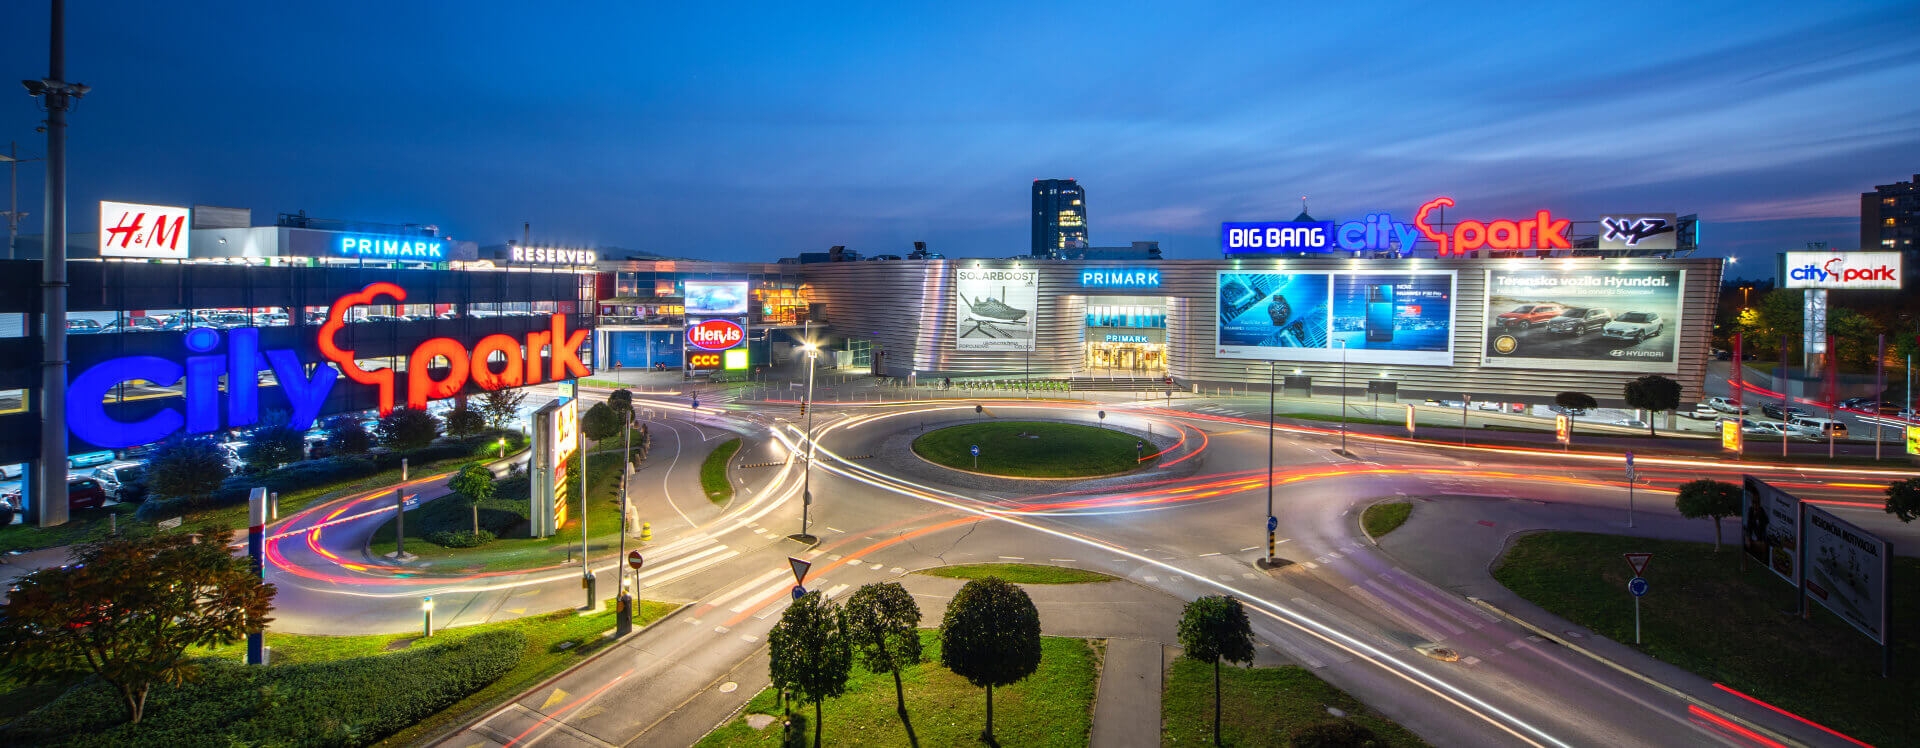 أفضل أماكن التسوق والمطاعم في ليوبليانا سلوفينيا مركز تسوق سيتي بارك 